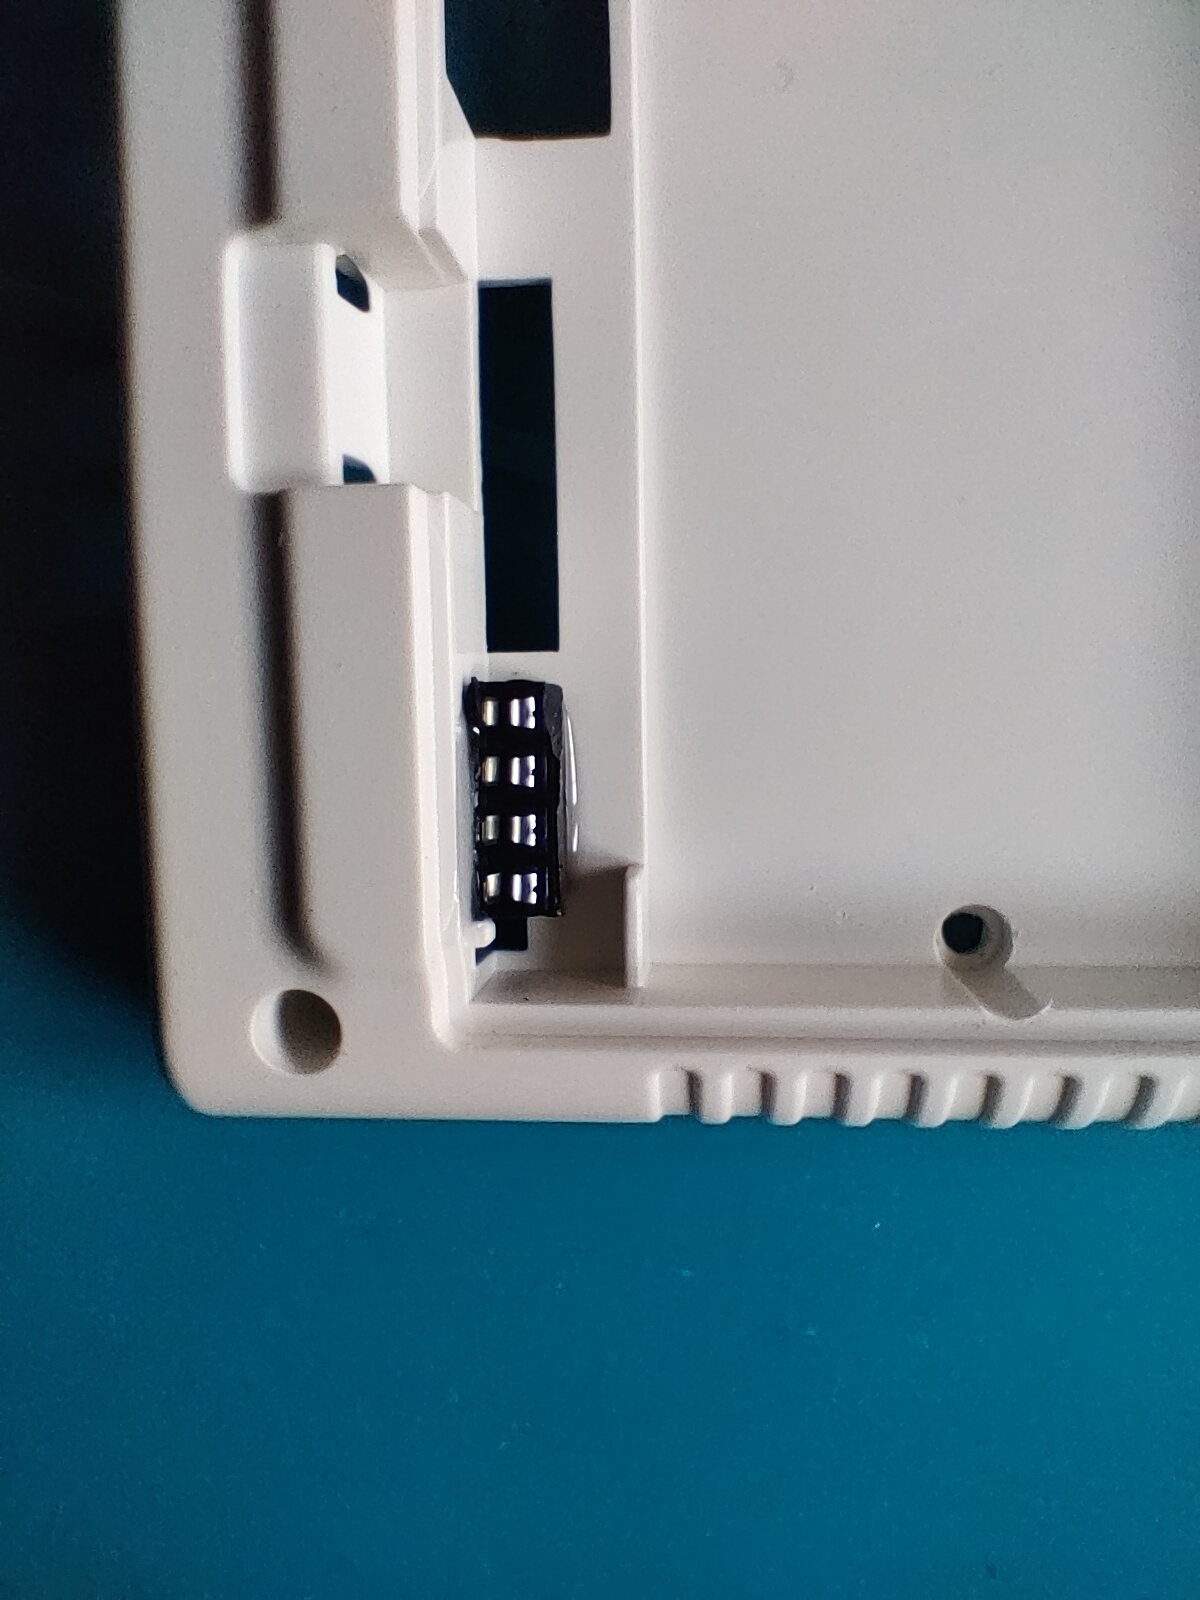 Mini socket glued